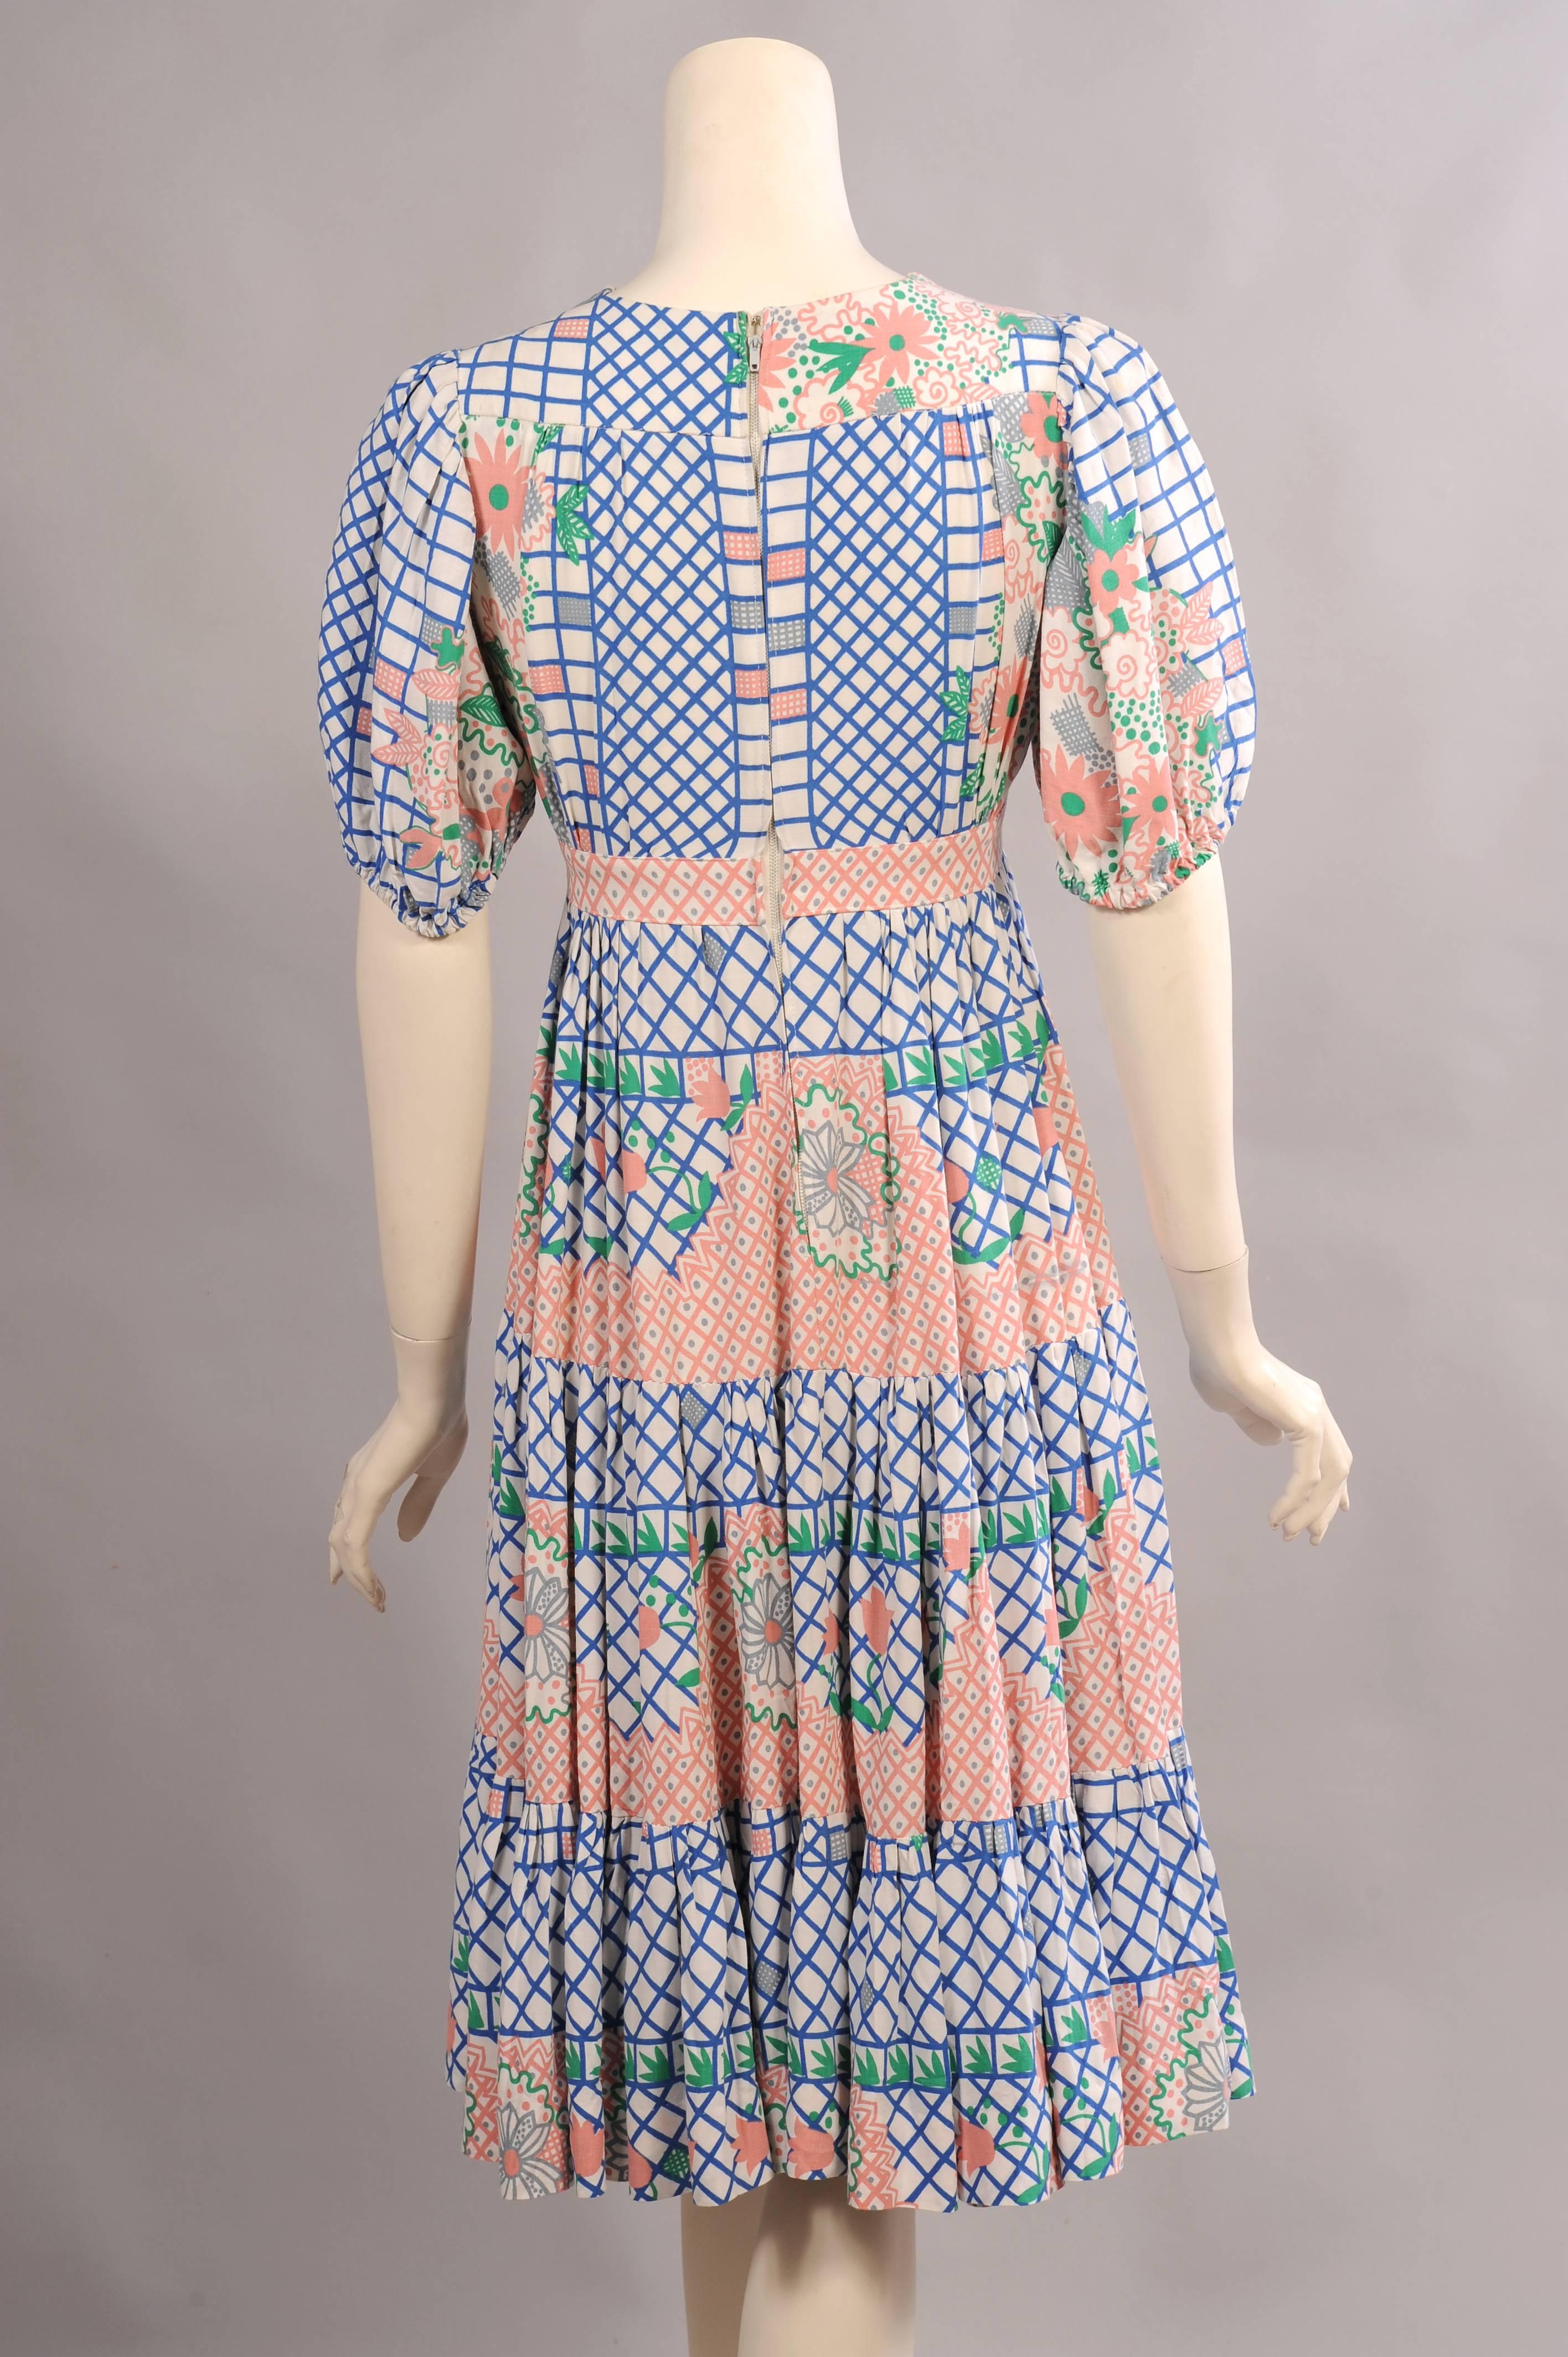 Gray Ossie Clark for Radley Dress, Celia Birtwell Print